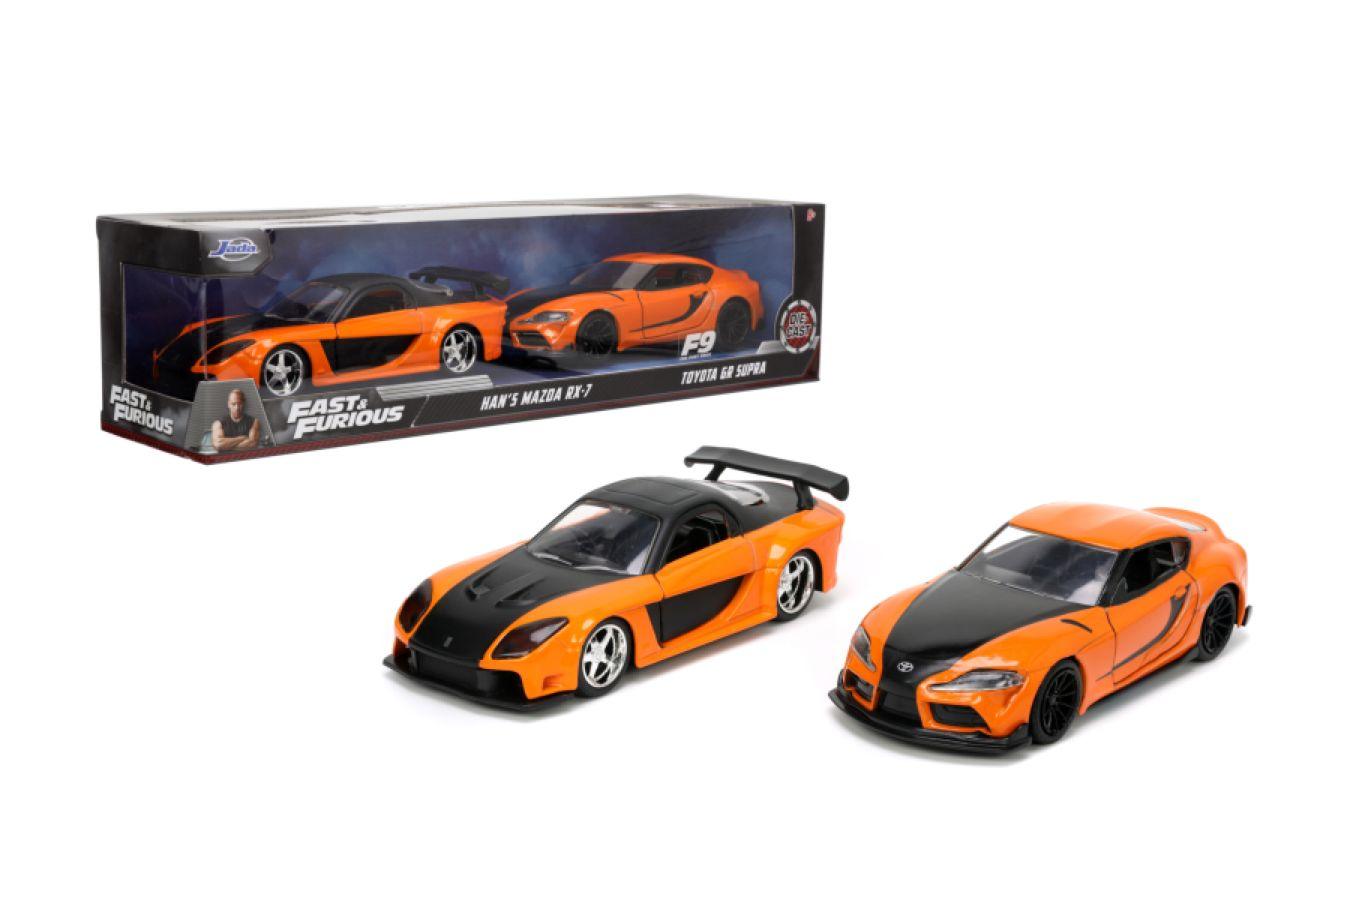 Fast & Furious - Han's Mazda RX-7 & Toyota GR S 1:32 Scale 2-Pack - Titan  Pop Culture Australia